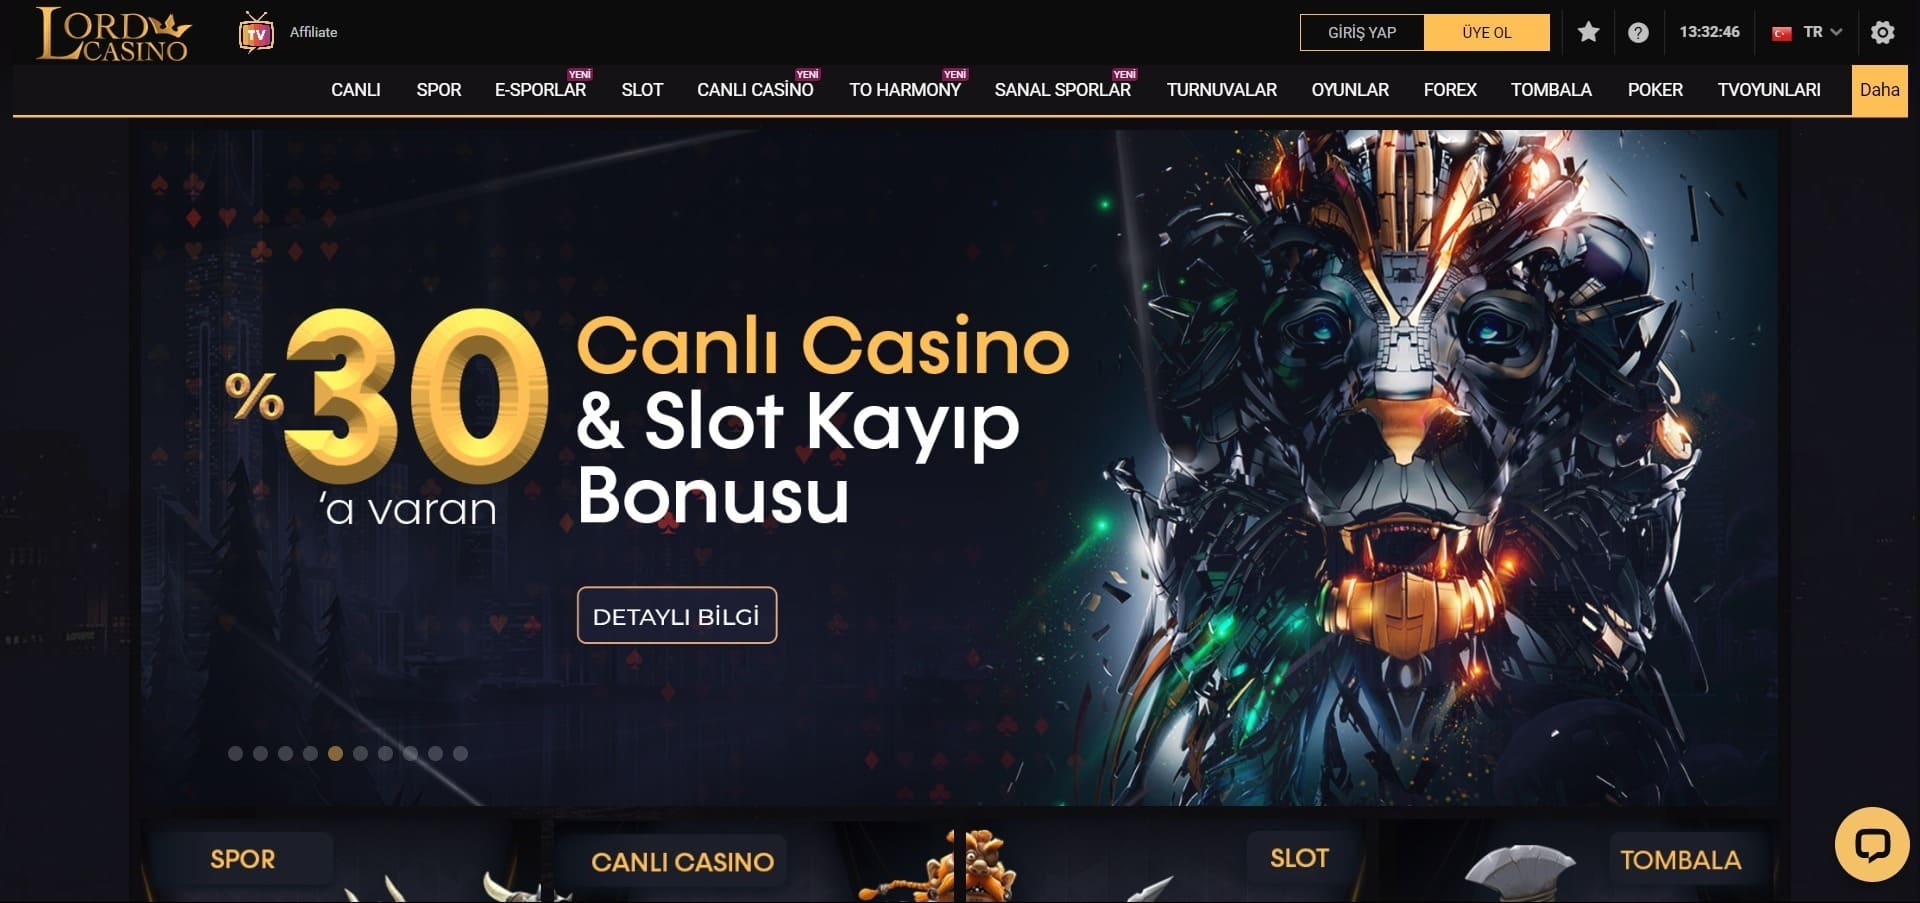 Lord Casino'nun resmi web sitesi